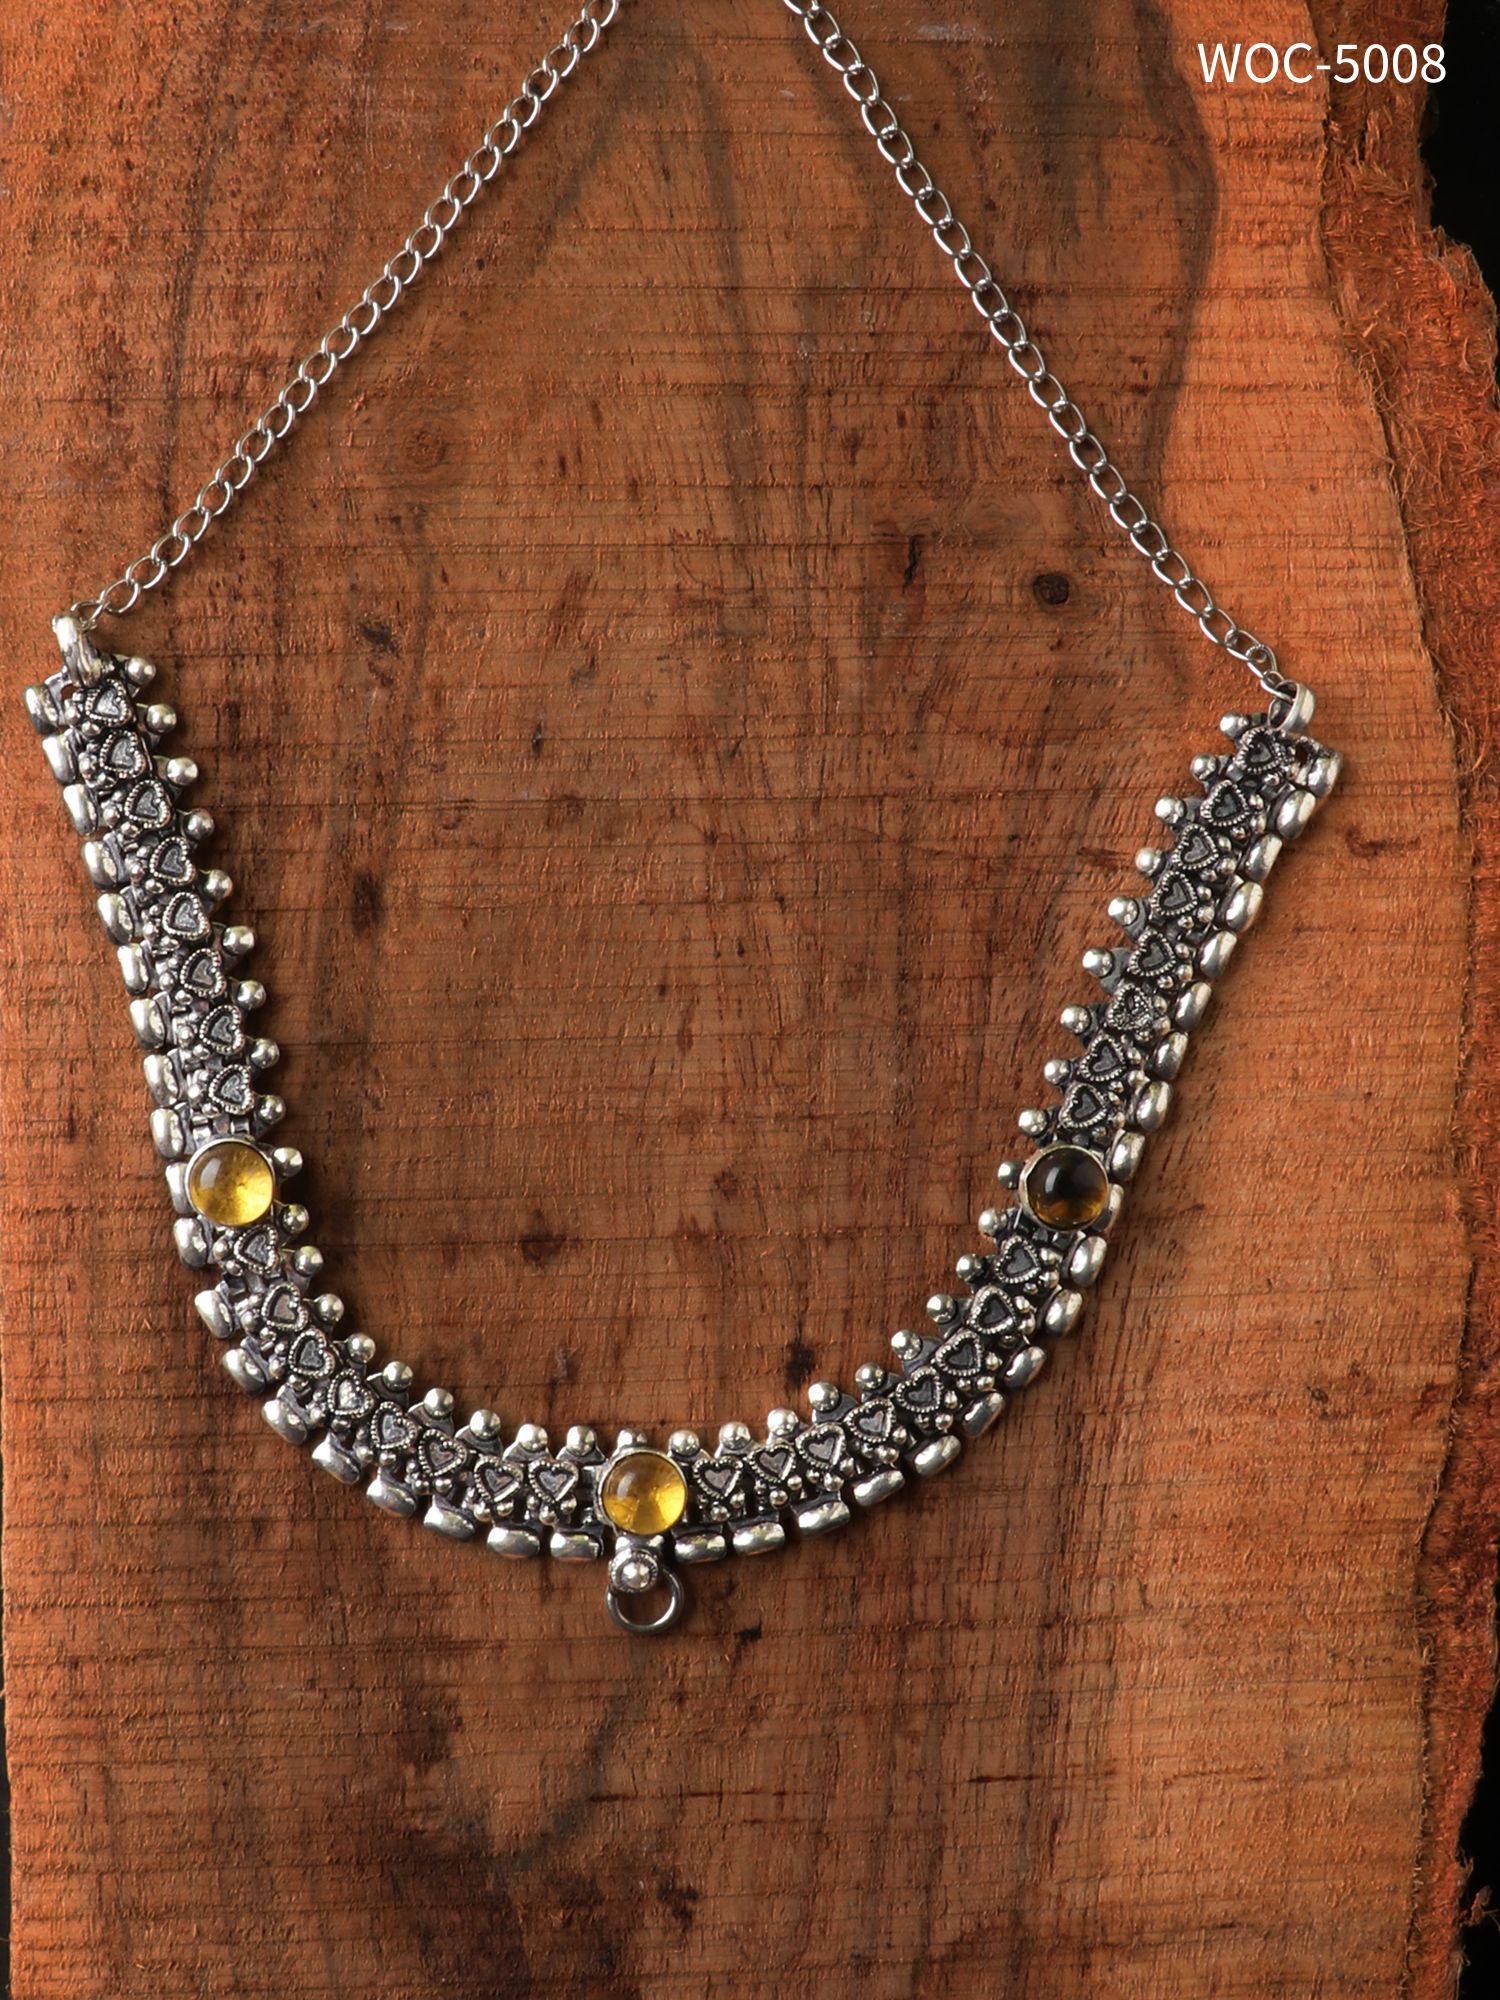 Oxidised stone necklace